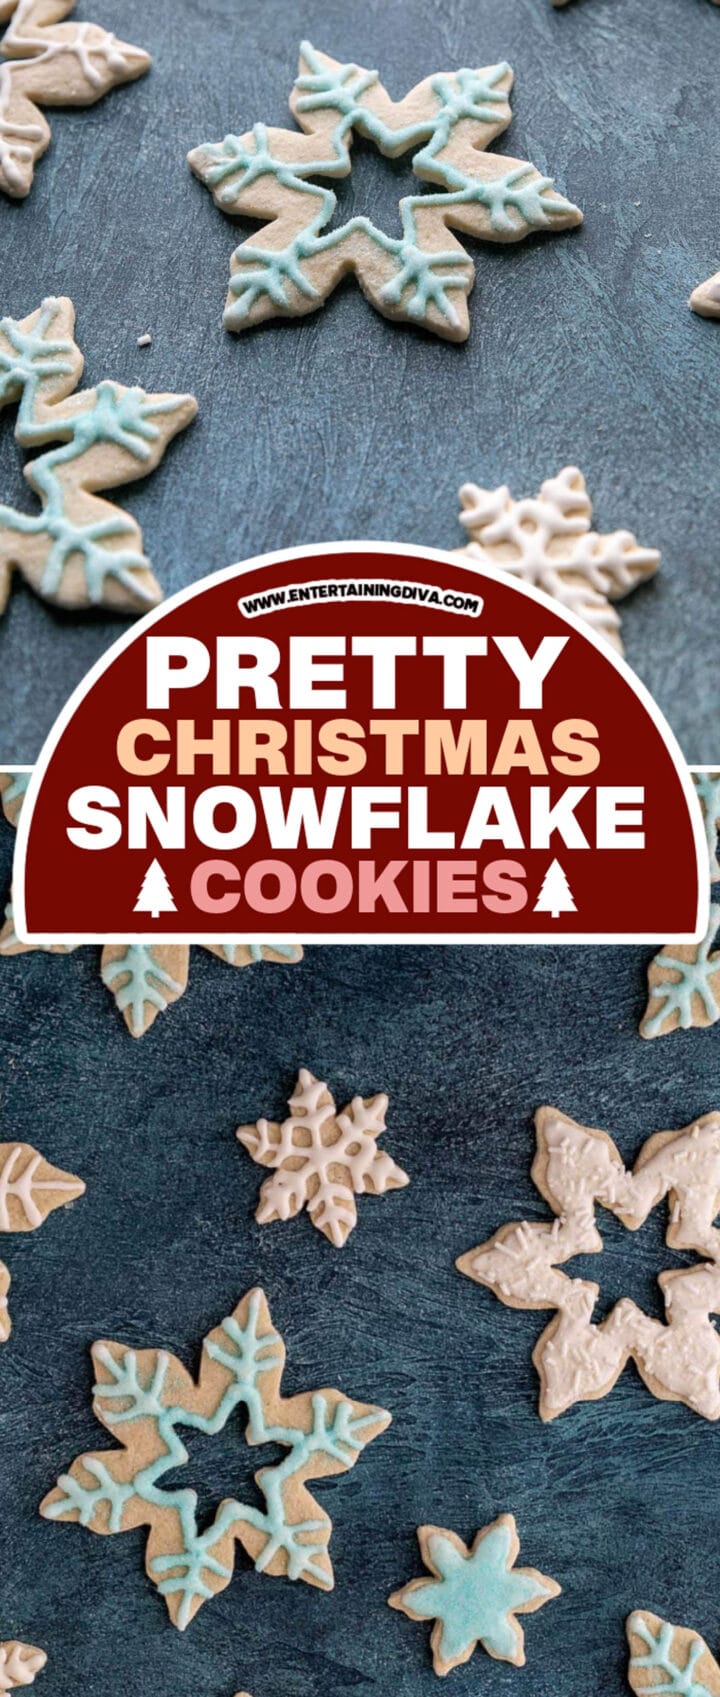 Festive snowflake sugar cookies.